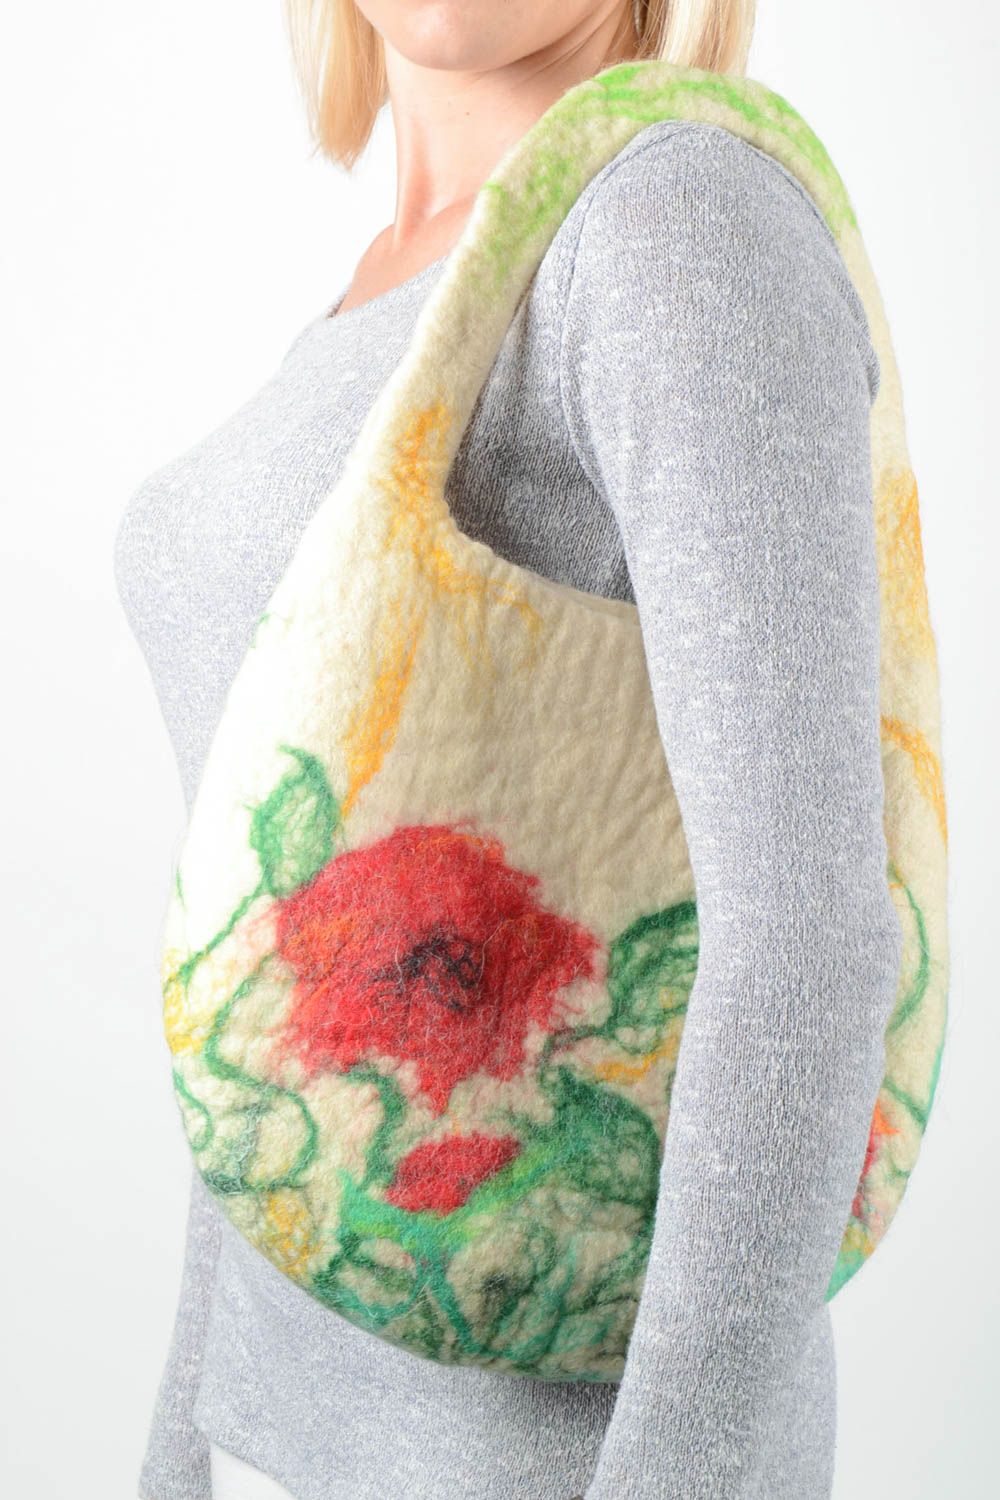 Sac à main jaune Sac de laine fait main avec fleurs Accessoire femme original photo 1